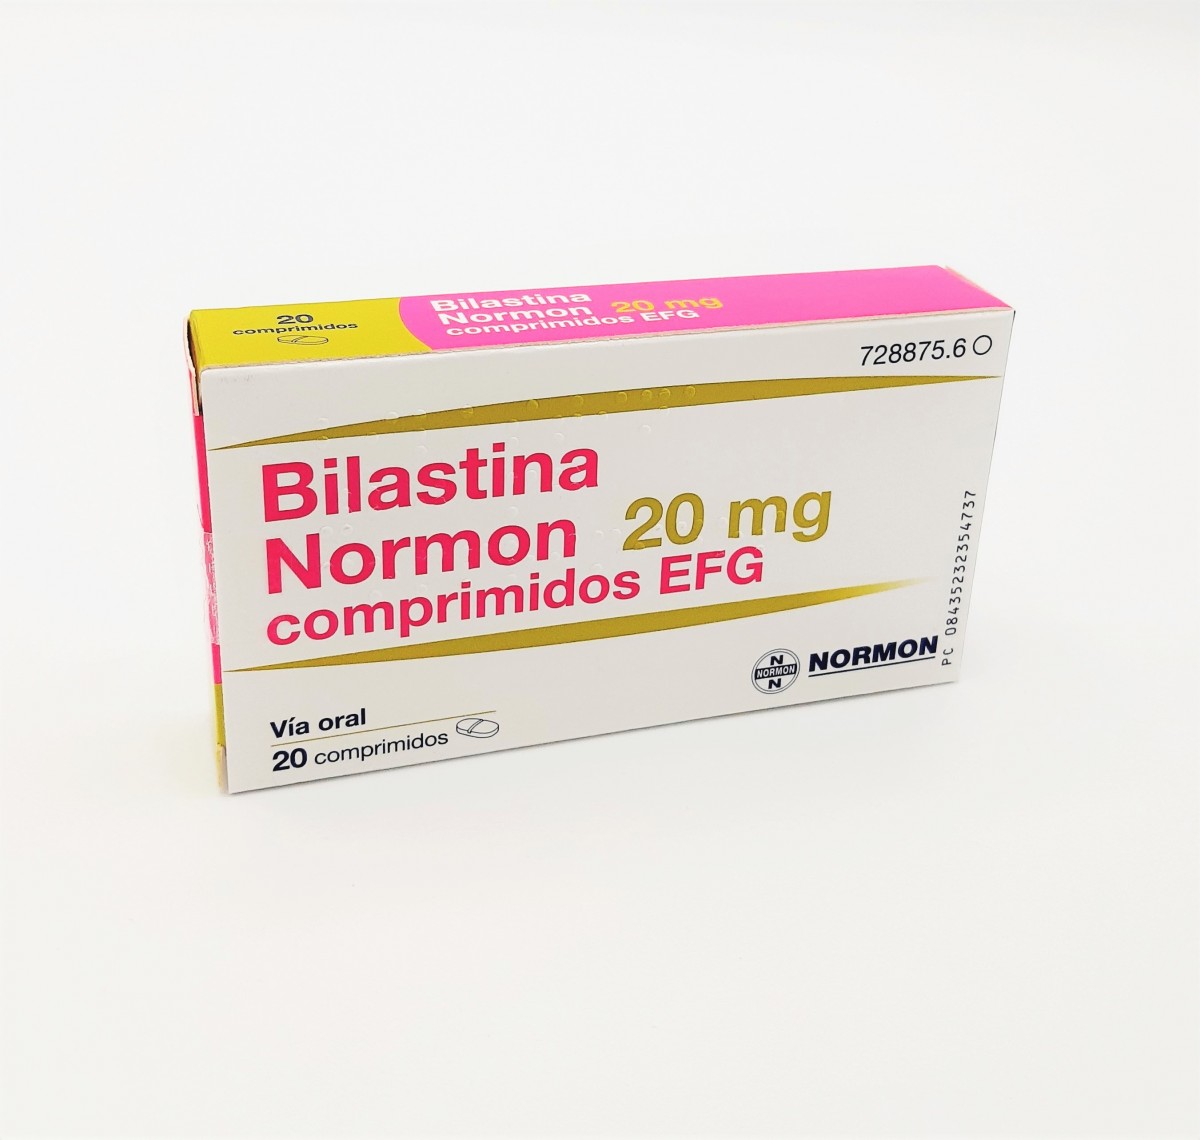 BILASTINA NORMON 20 MG COMPRIMIDOS EFG, 20 comprimidos (Blister Al/Al/PA-PVC) fotografía del envase.